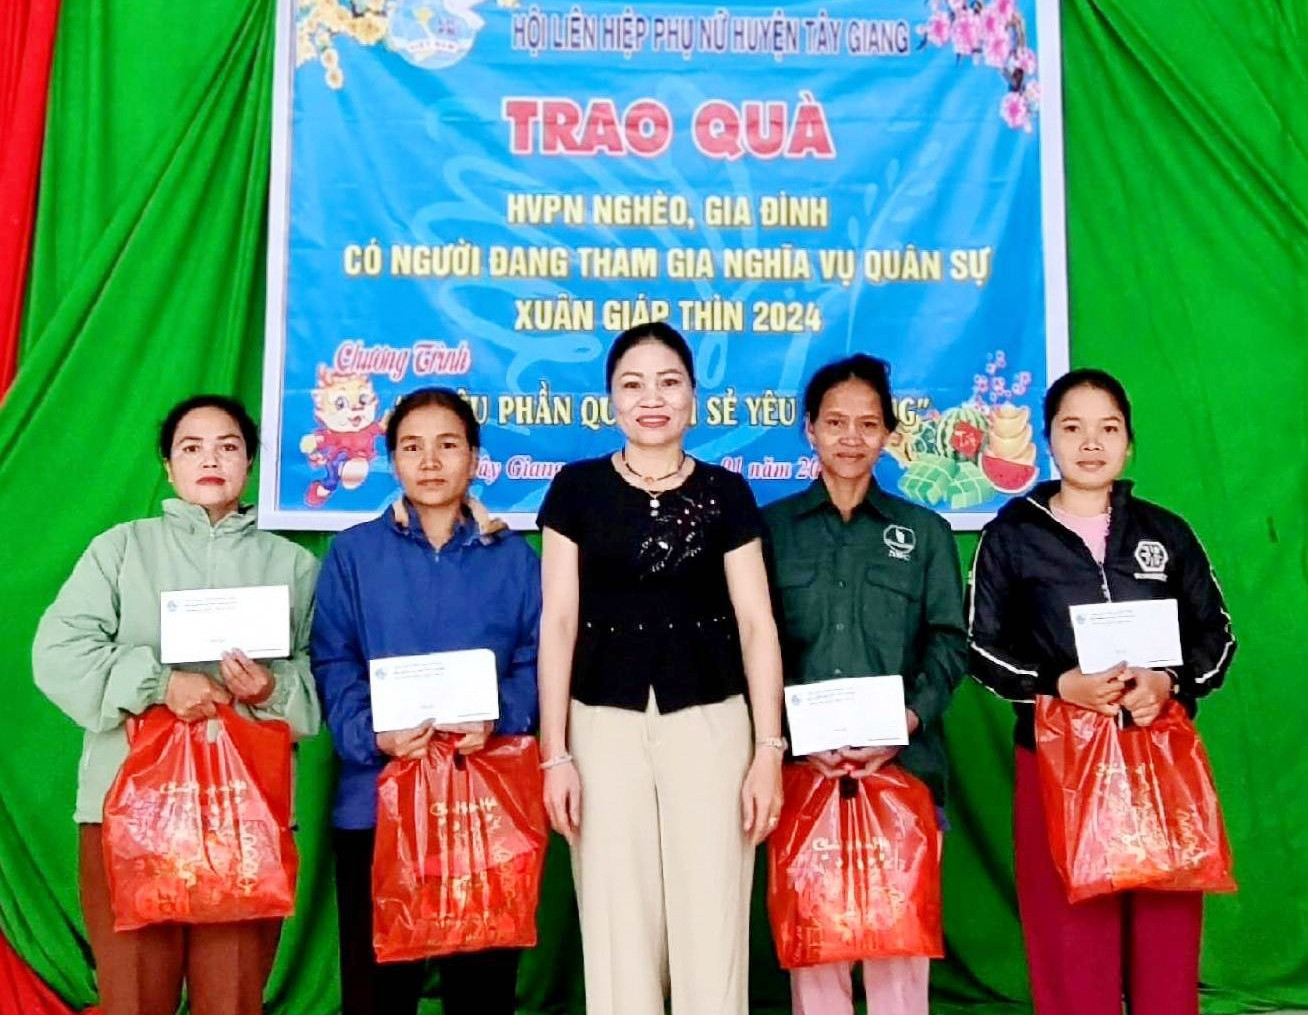 Hội LHPN huyện Tây Giang trao quà tết hỗ trợ hội viên phụ nữ nghèo. Ảnh: H.Thúy